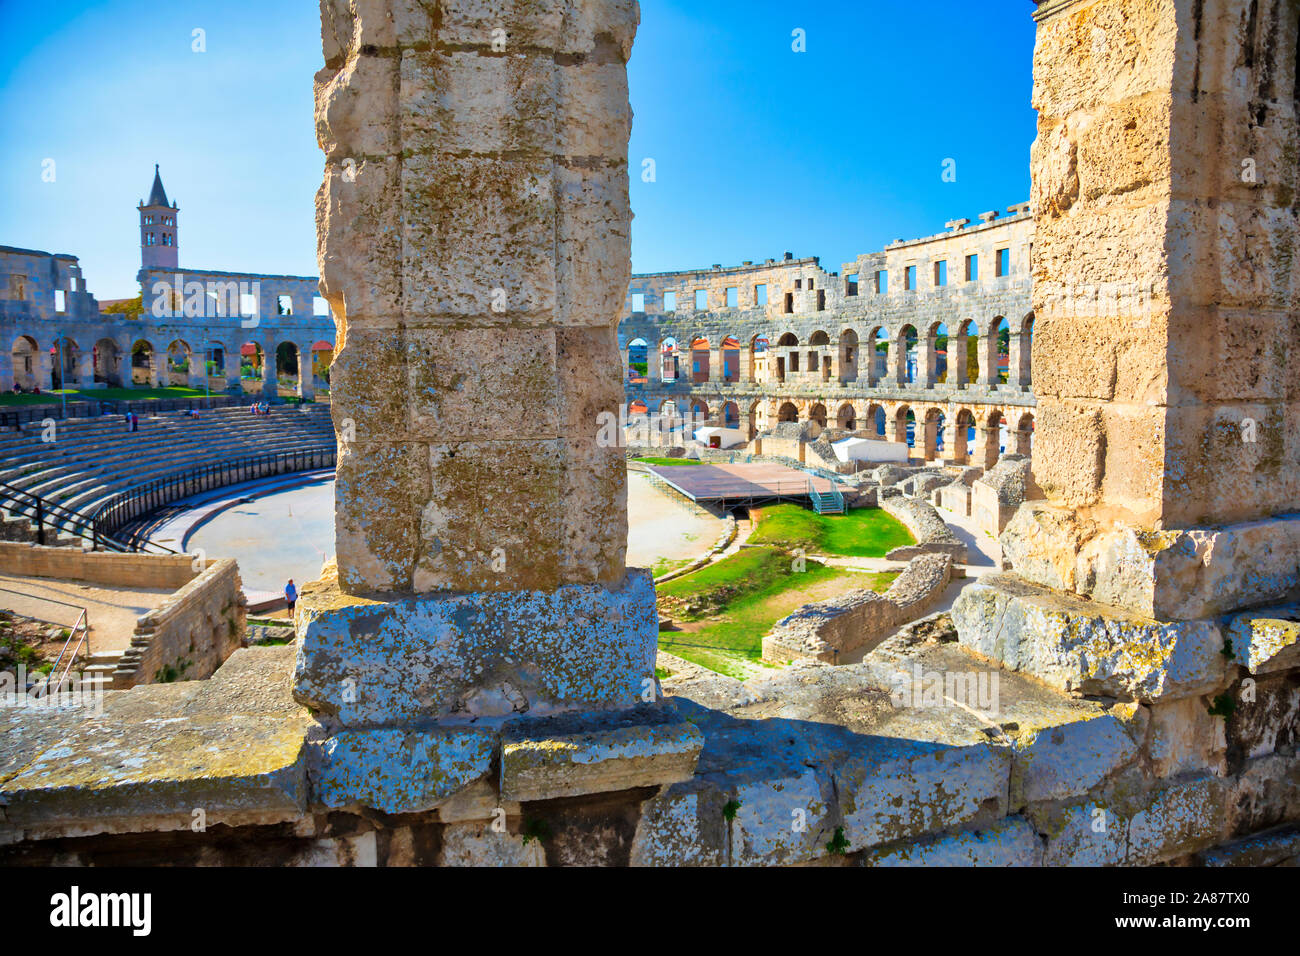 Arena de Pula, Croatie. Ruines de l'amphithéâtre romains les mieux préservés. UNESCO World Heritage site. Droit Banque D'Images